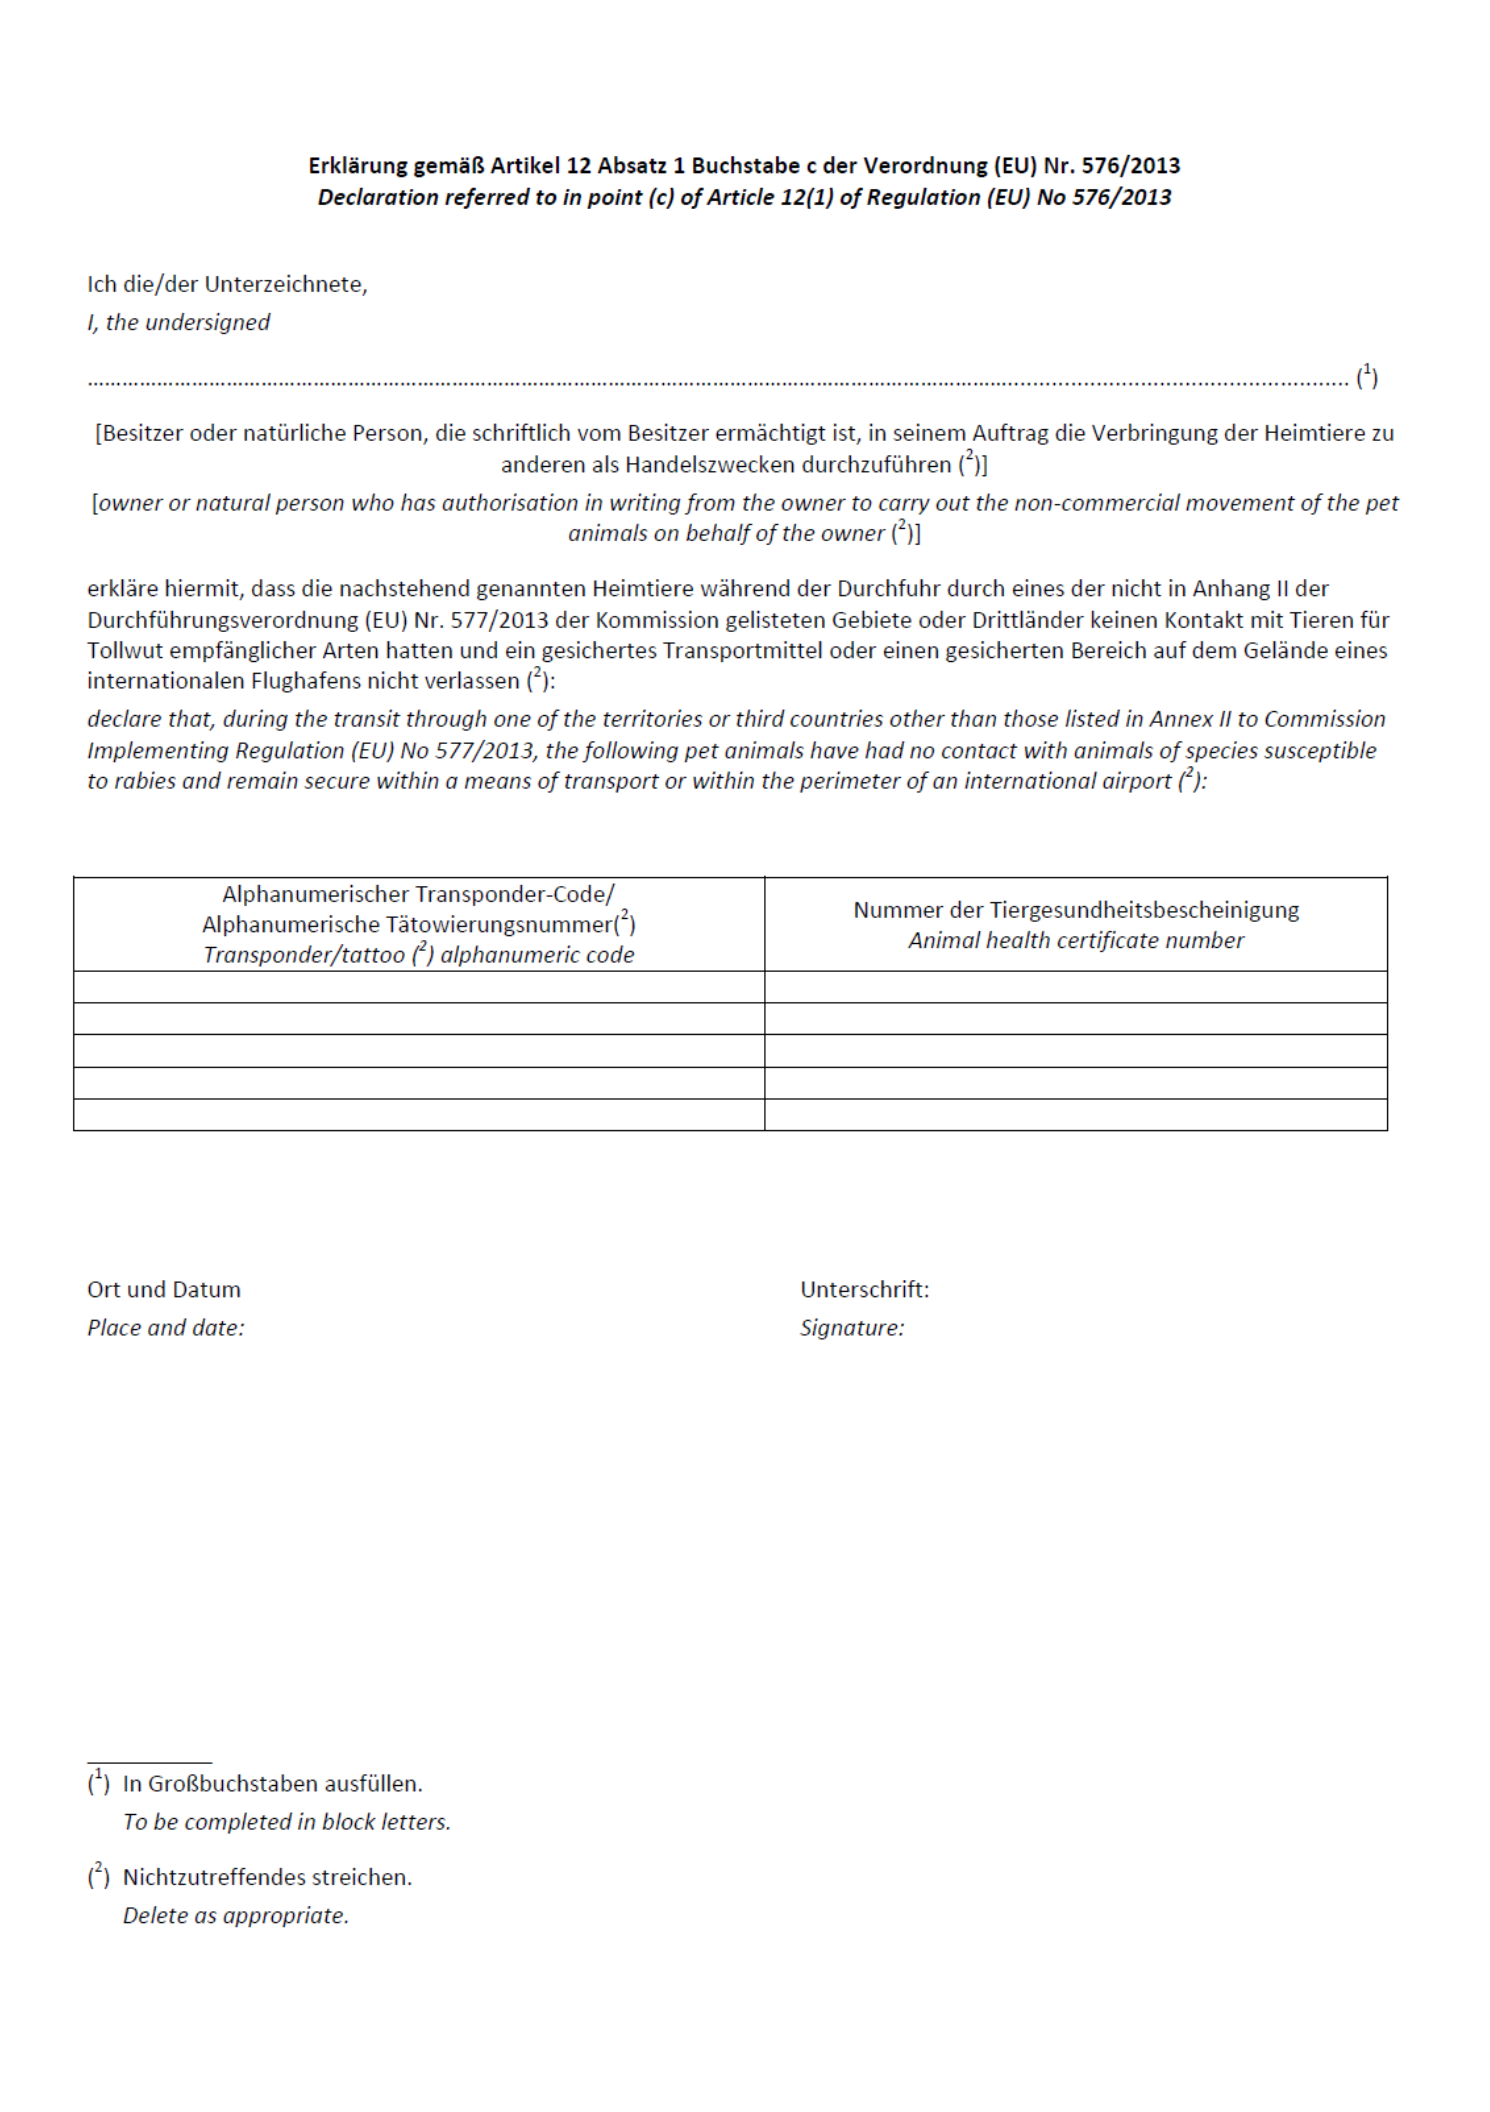 Schriftliche Erklärung gemäß Artikel 12 Absatz 1 Buchstabe c der Verordnung (EU) Nr. 576/2013